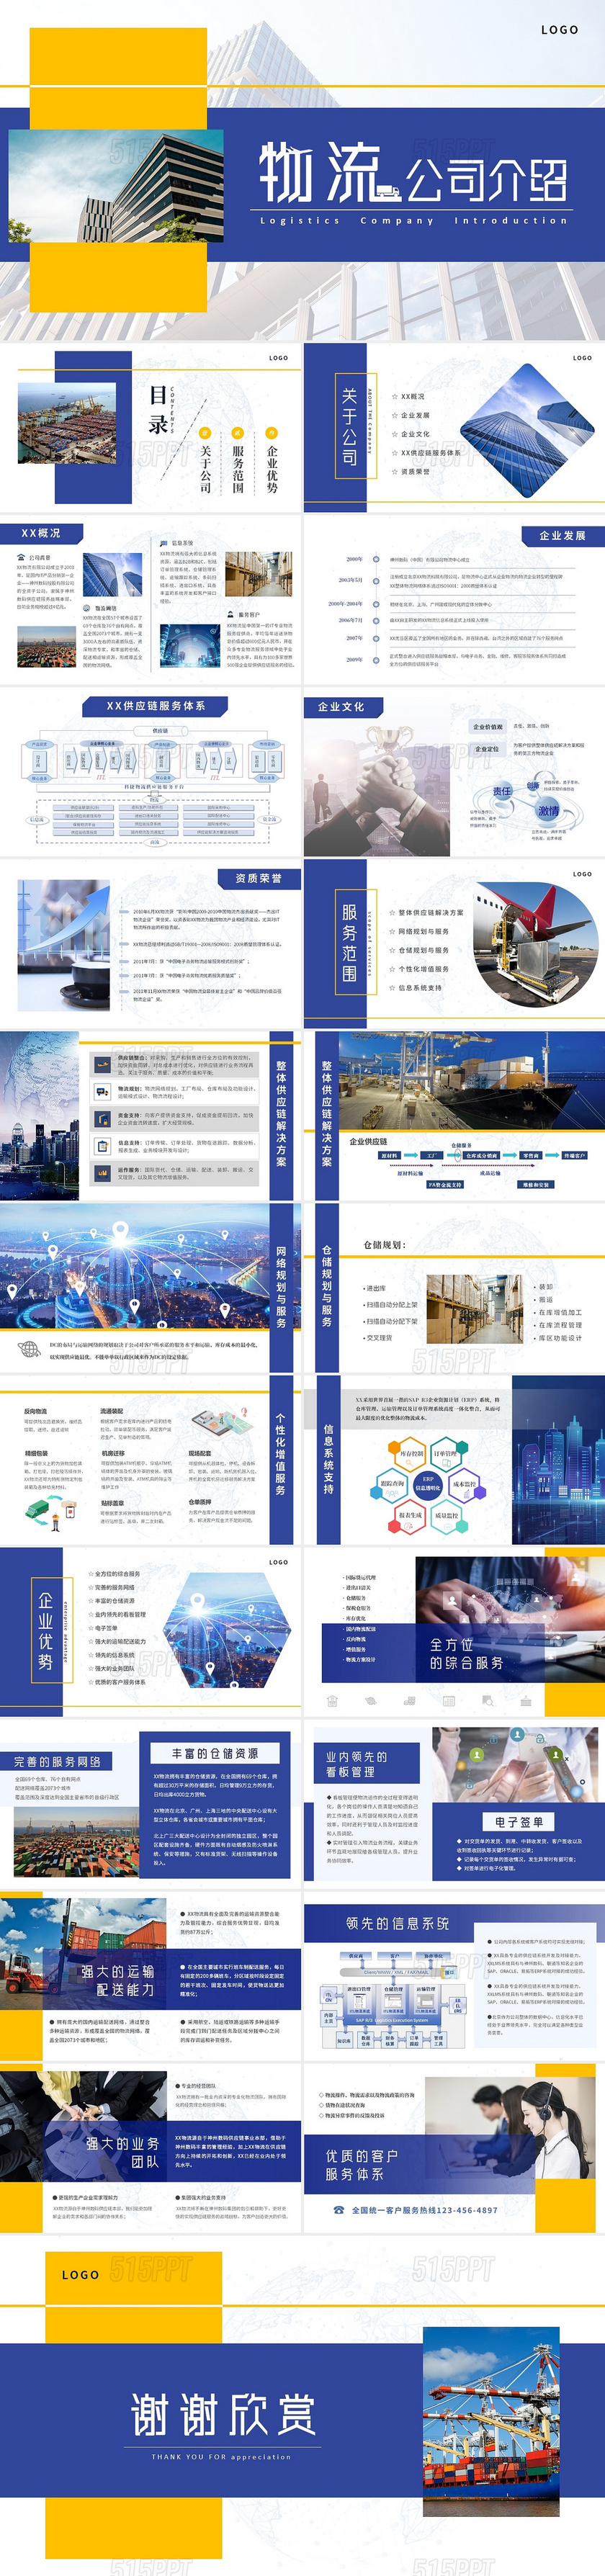 蓝色创意几何商务物流公司介绍企业集团业务服务简介PPT模板